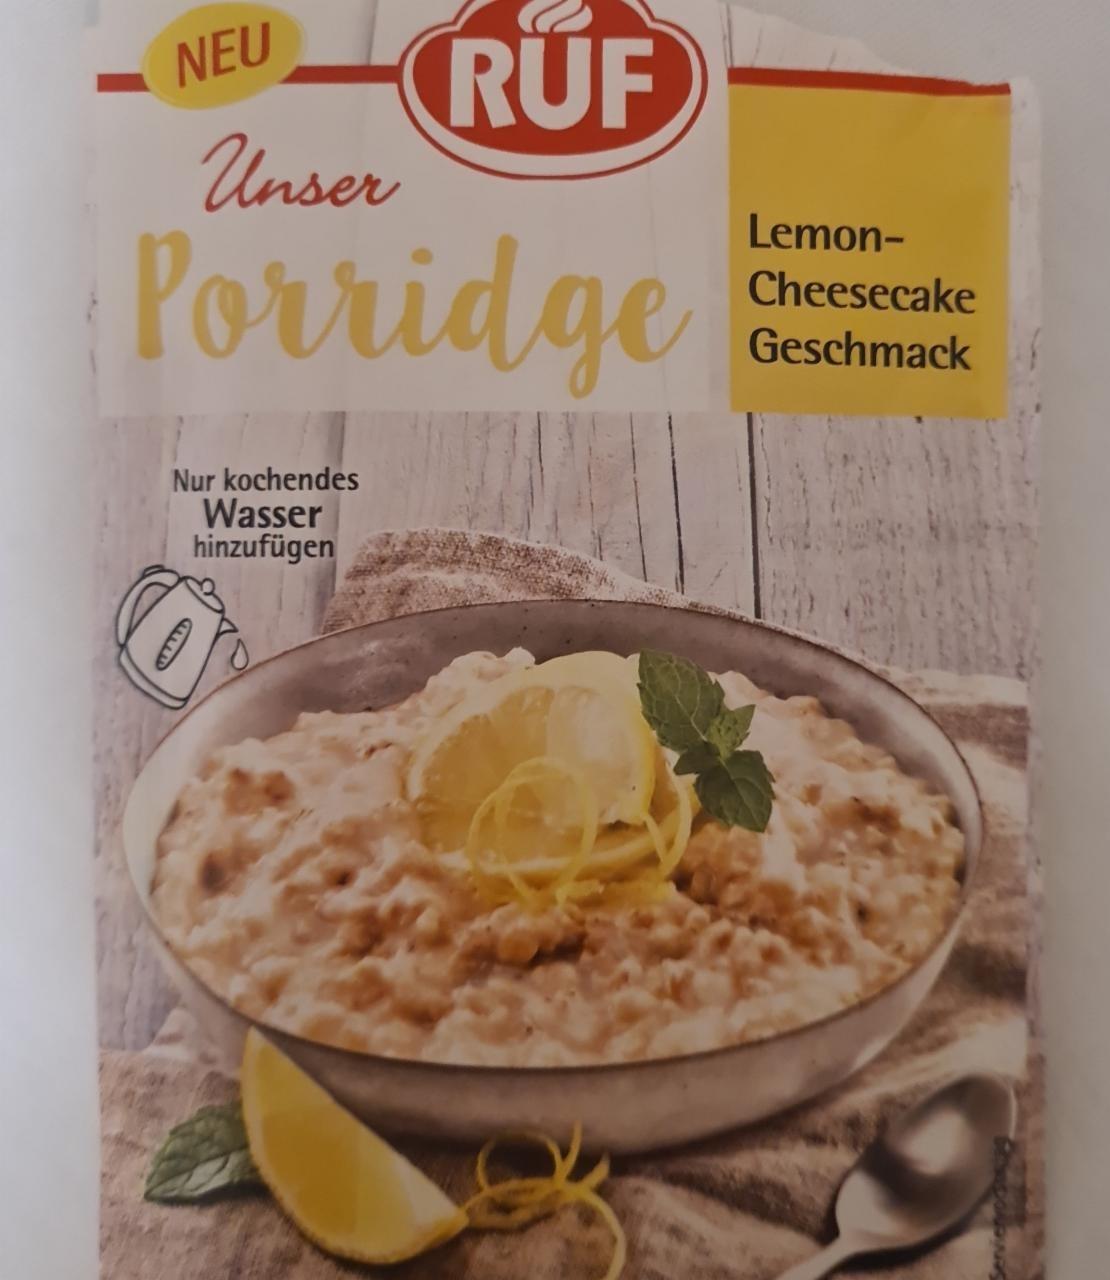 Fotografie - Unser Porridge Lemon-Cheesecake Geschmack RUF